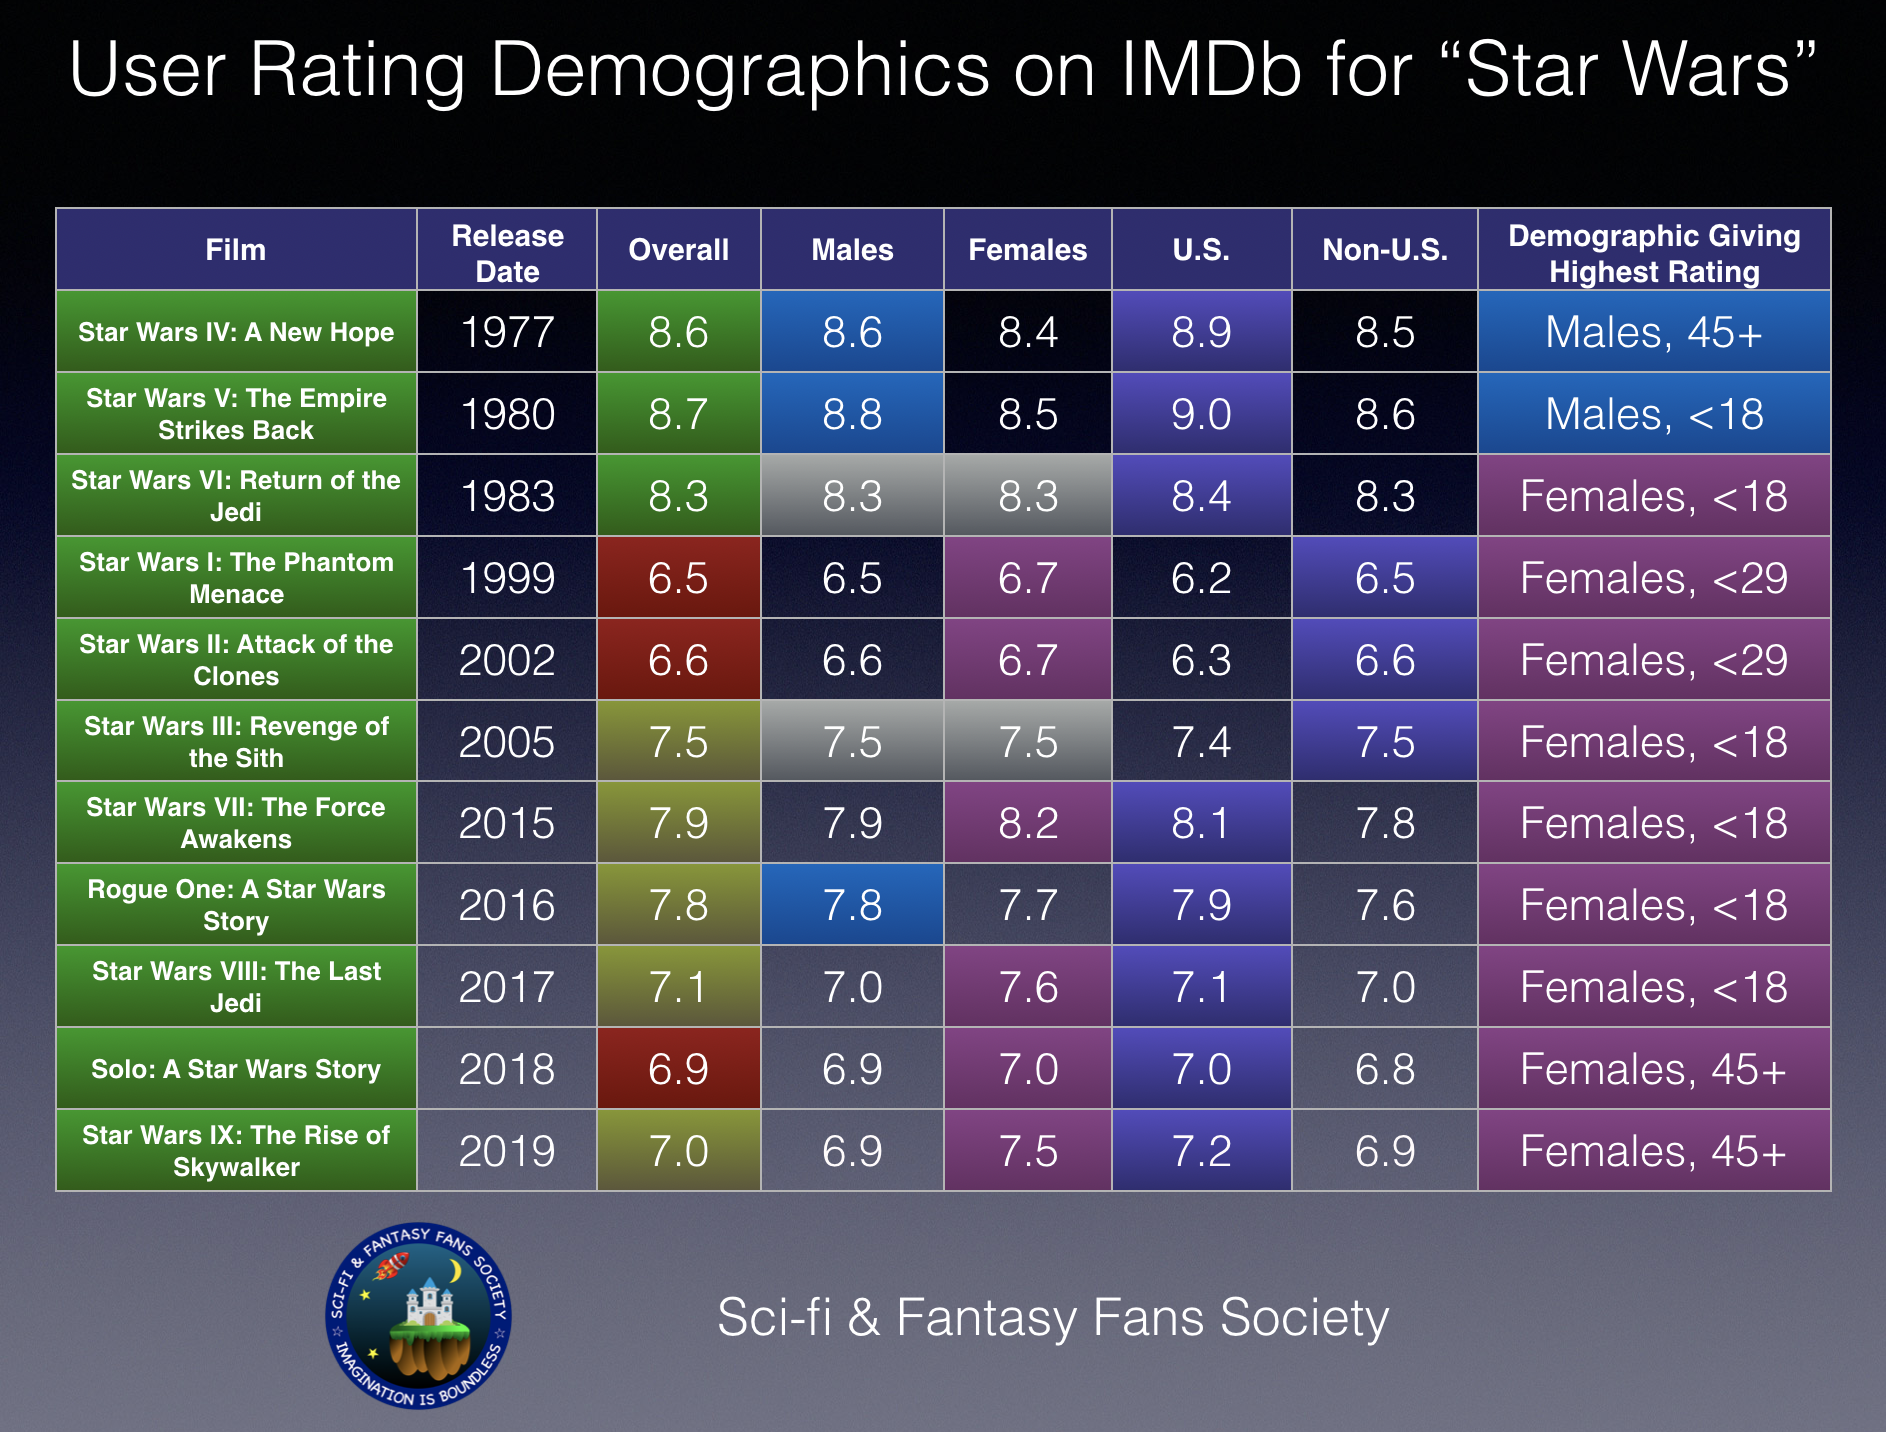 User Rating Demographics on IMDb for "Star Wars" Films